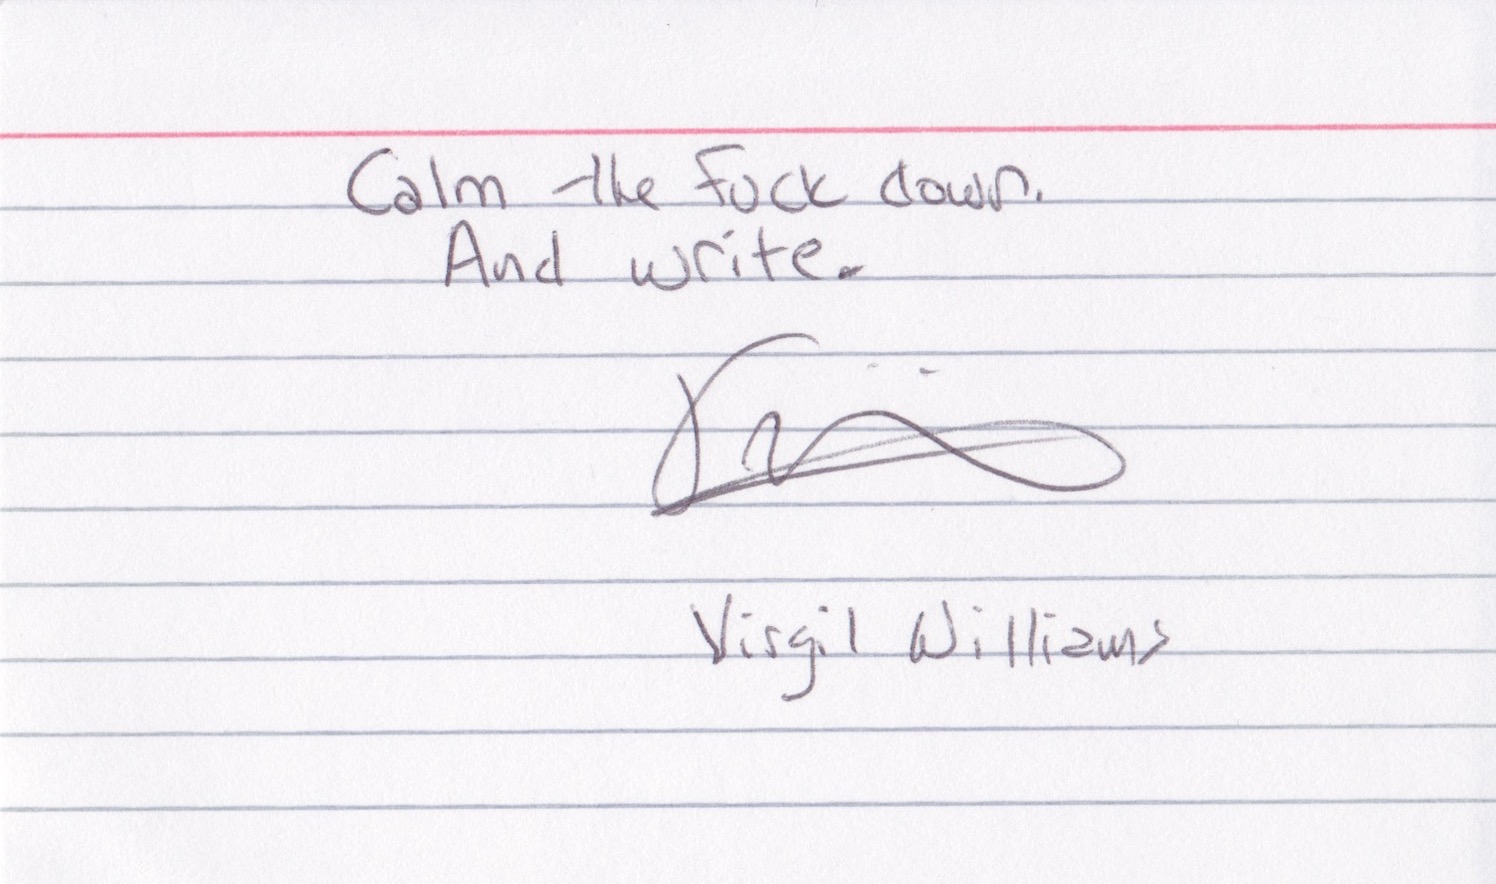 Virgil Williams